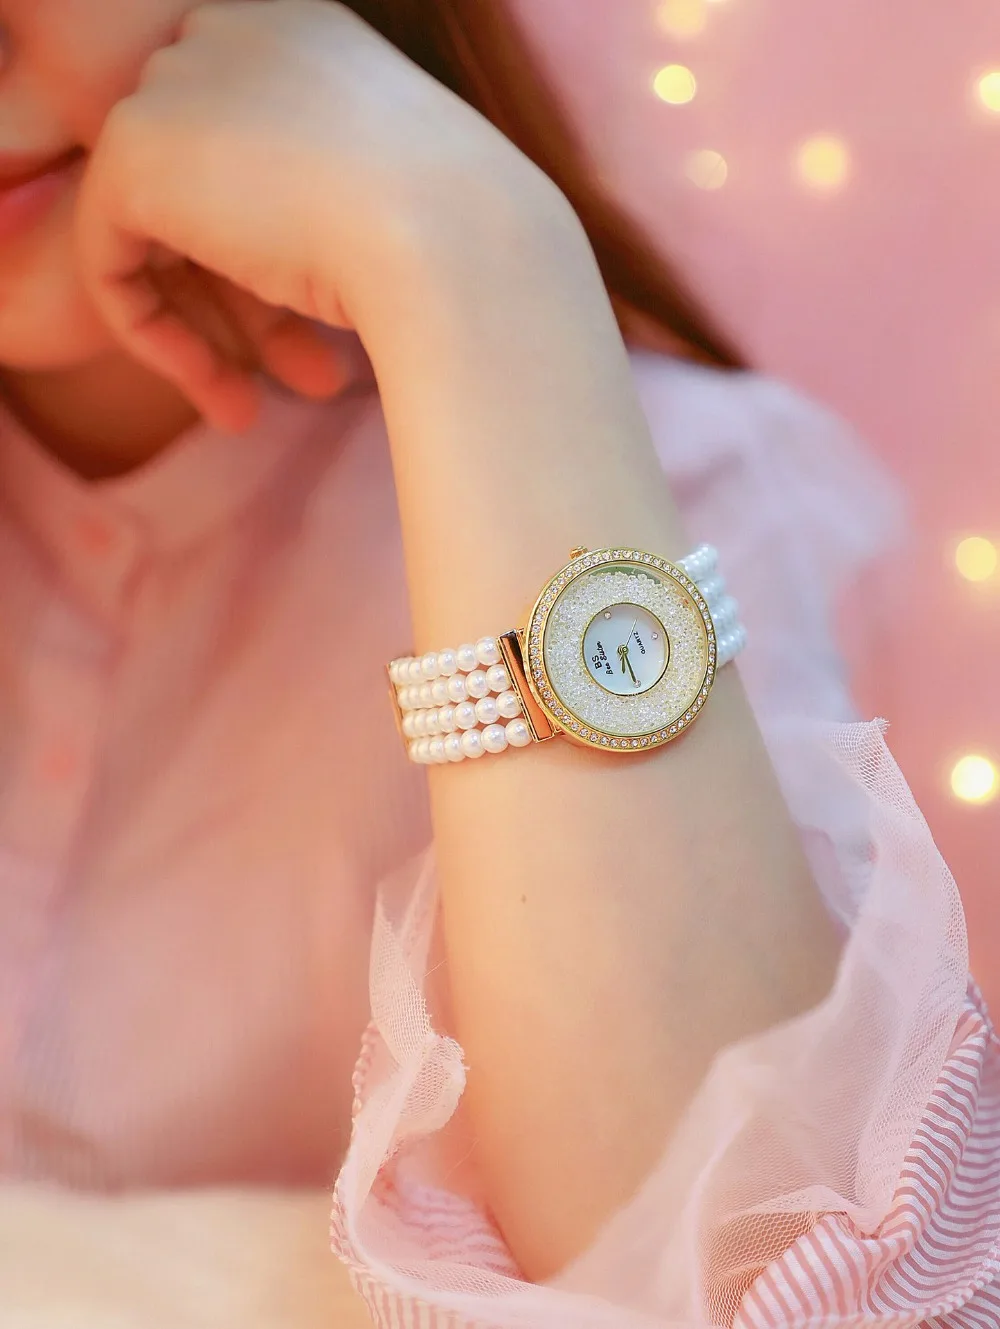 Relogio Feminino Топ бренд жемчужный ремешок повседневные женские часы модные женские часы женские Стразы кварцевые часы женский браслет